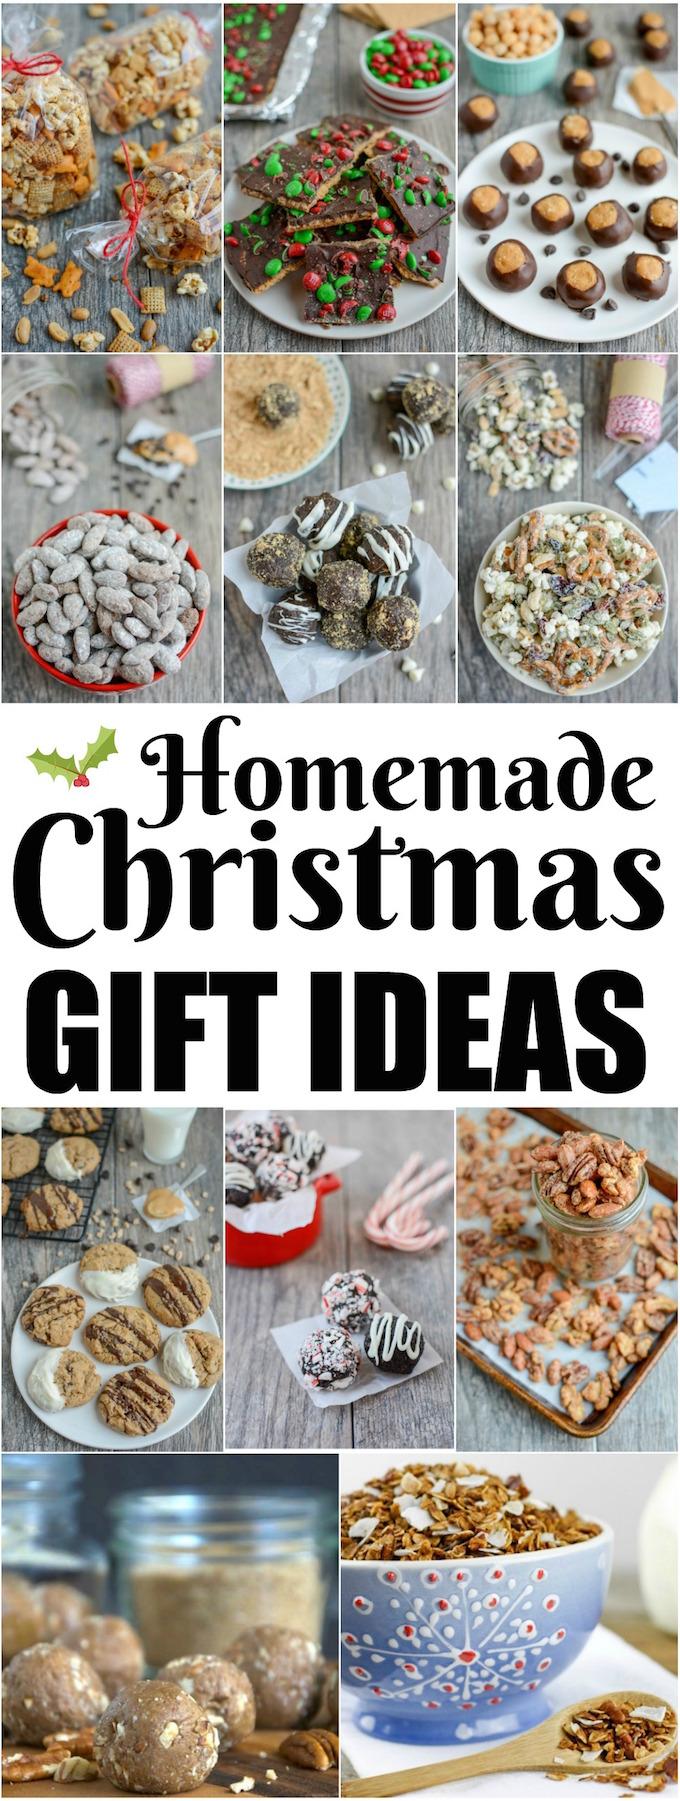 https://www.theleangreenbean.com/wp-content/uploads/2017/12/homemade-christmas-gift-ideas-1.jpg